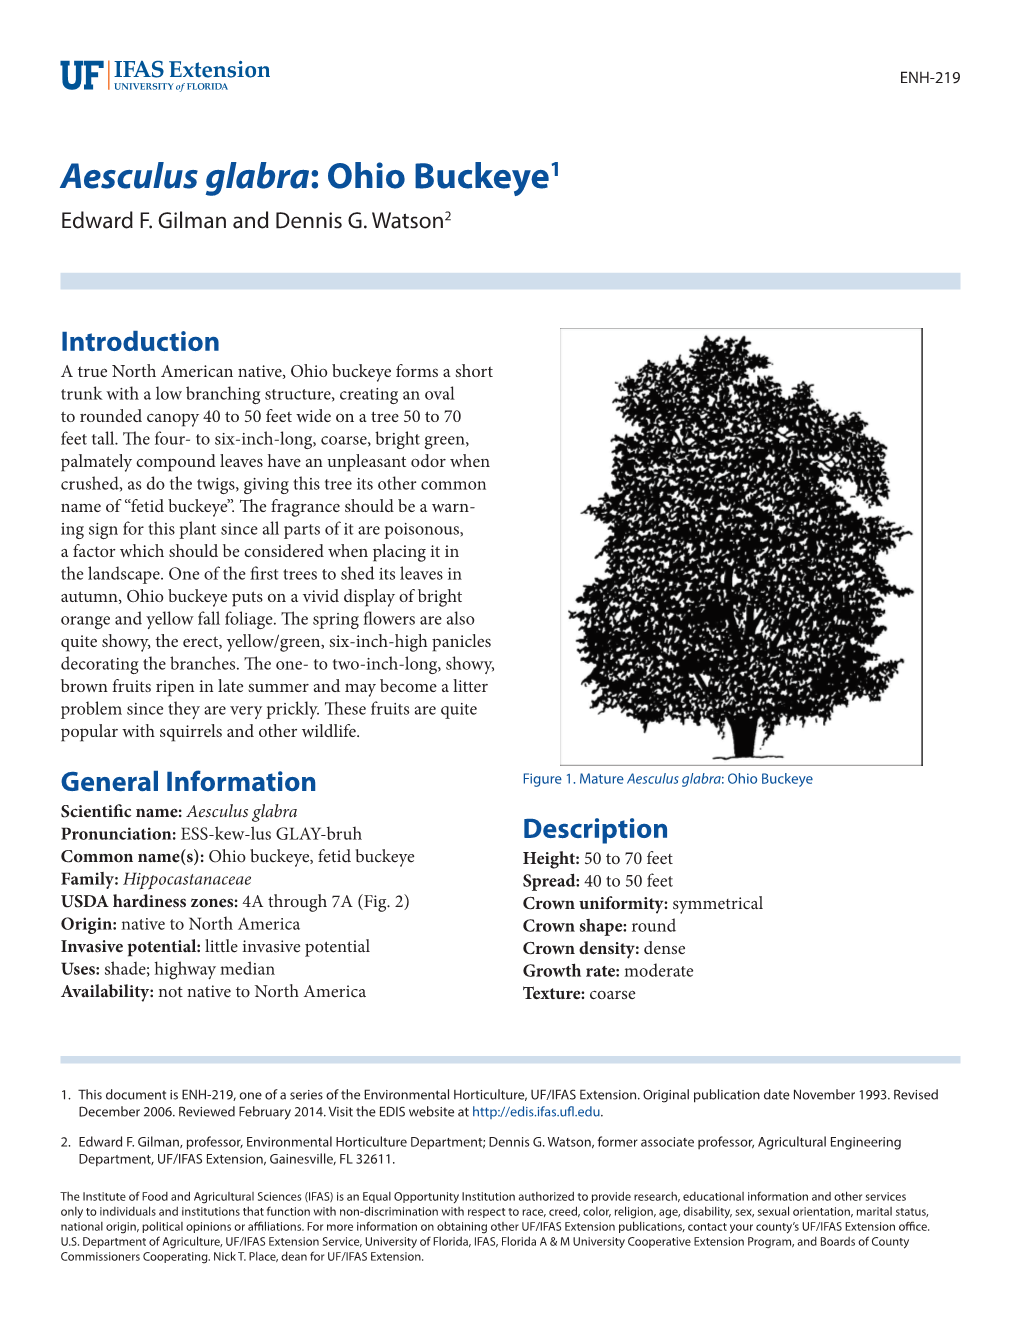 Aesculus Glabra: Ohio Buckeye1 Edward F